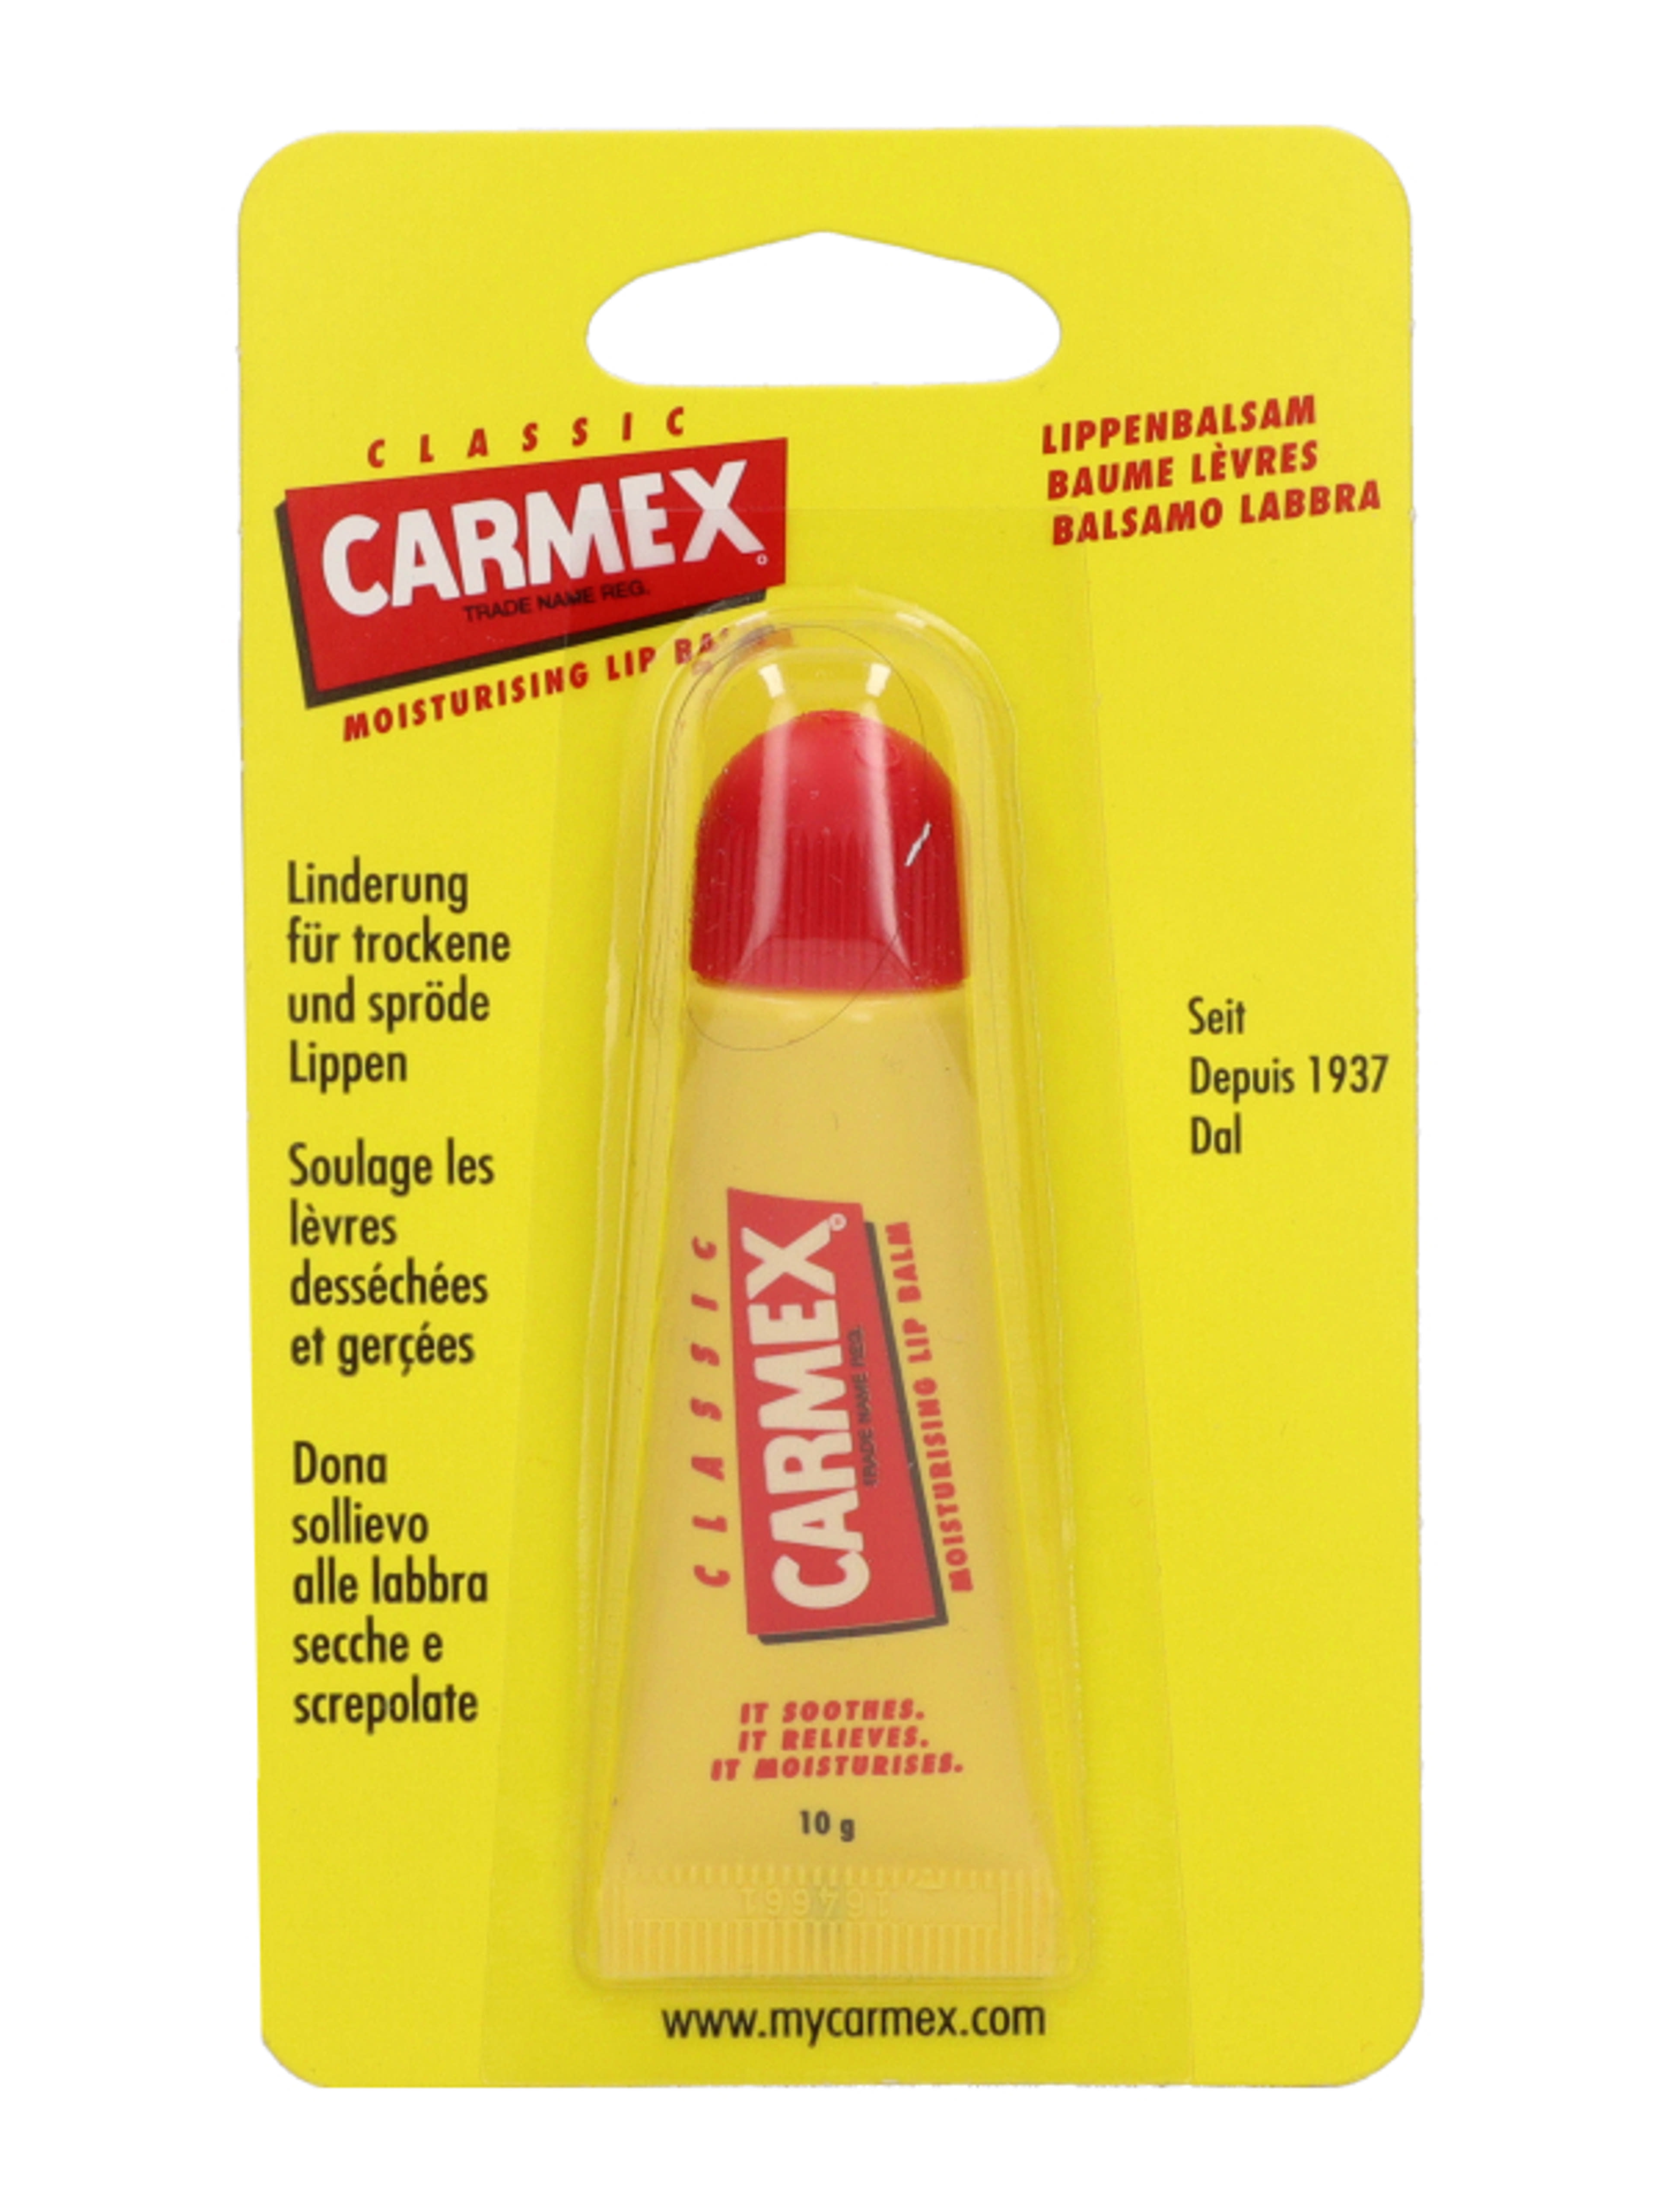 Carmex tubusos ajakápoló - 10 g-2